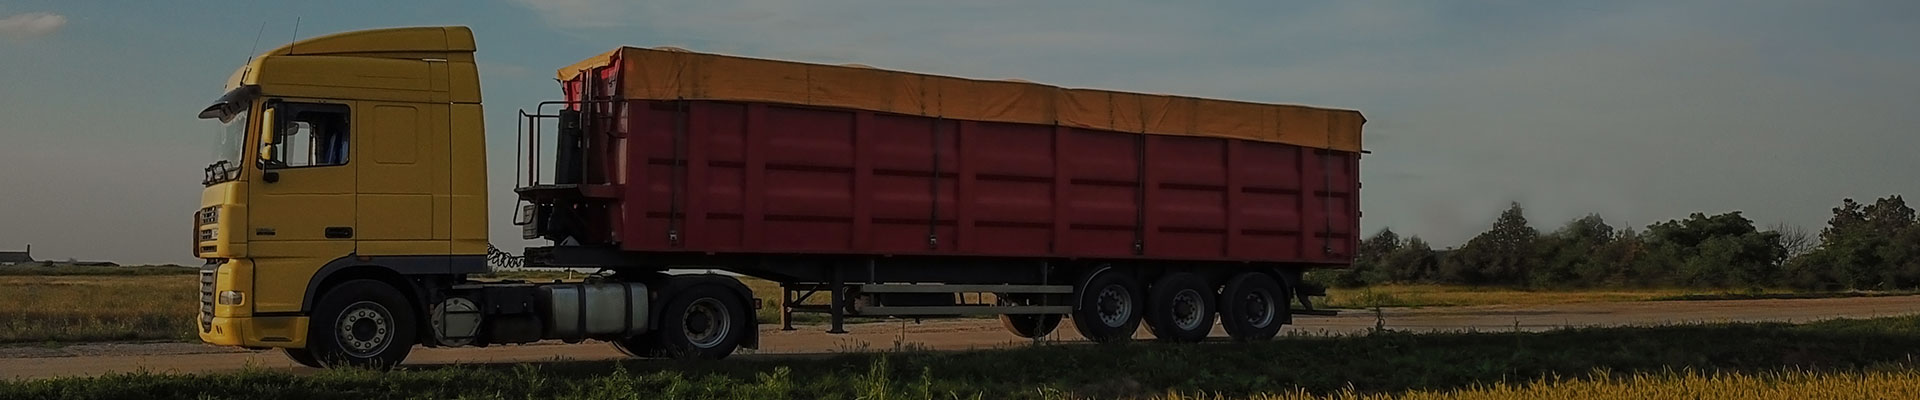 truck transportating goods